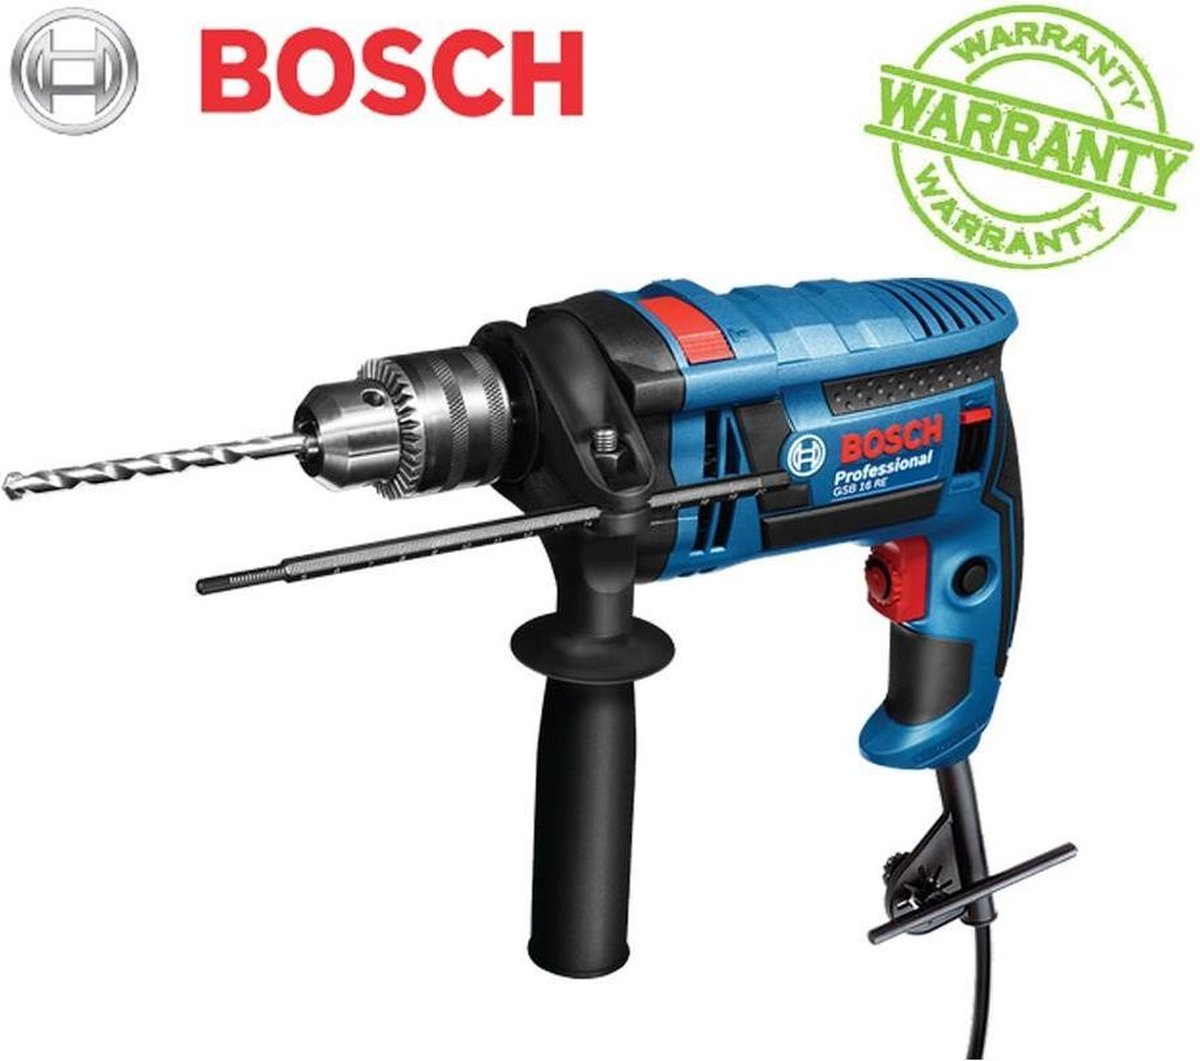 Bosch professional | GSB 16 RE | 3165140691871 | klopboormachine